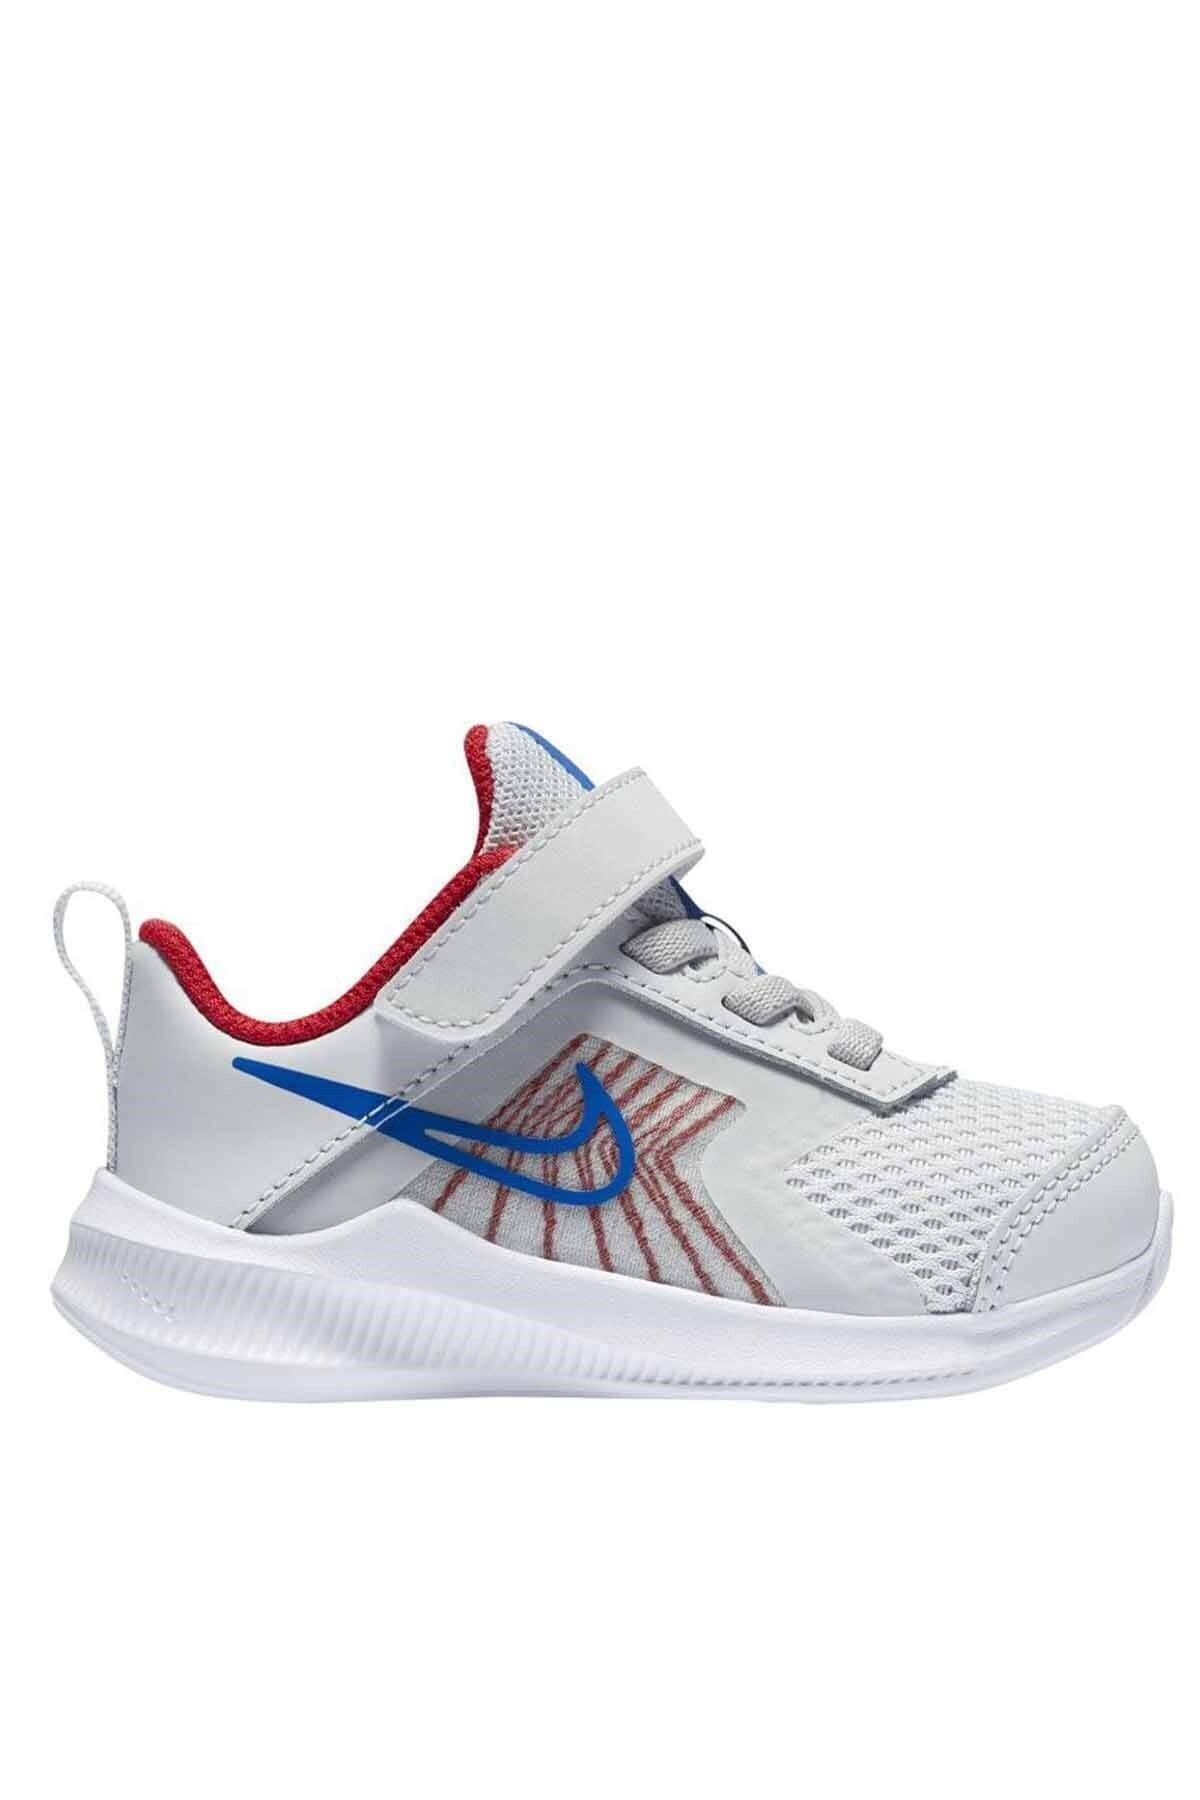 Nike Downshifter 11 Tdv Çocuk Yürüyüş Koşu Ayakkabı Cz3967-013